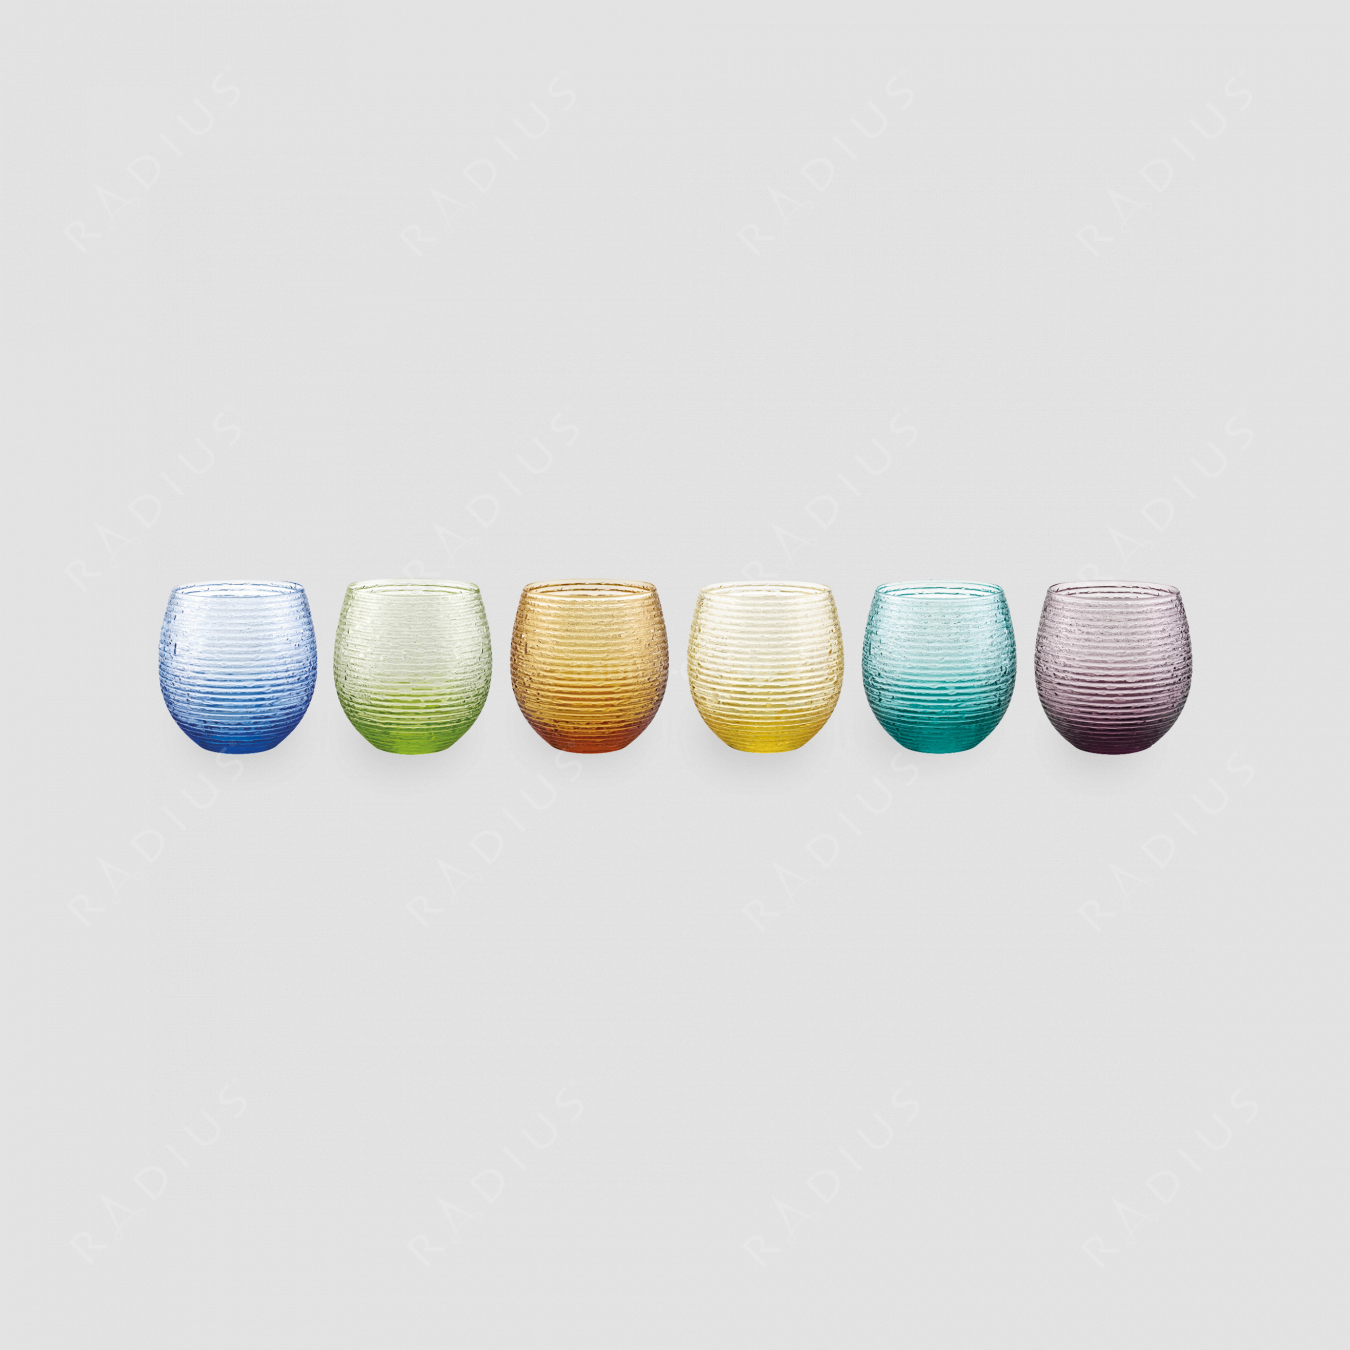 Набор из 6-ти стаканов для напитков, объем: 250 мл, диаметр: 8,6 см, высота: 8,6 см, цвет: ассорти, серия Multicolor, IVV (Italy), Италия